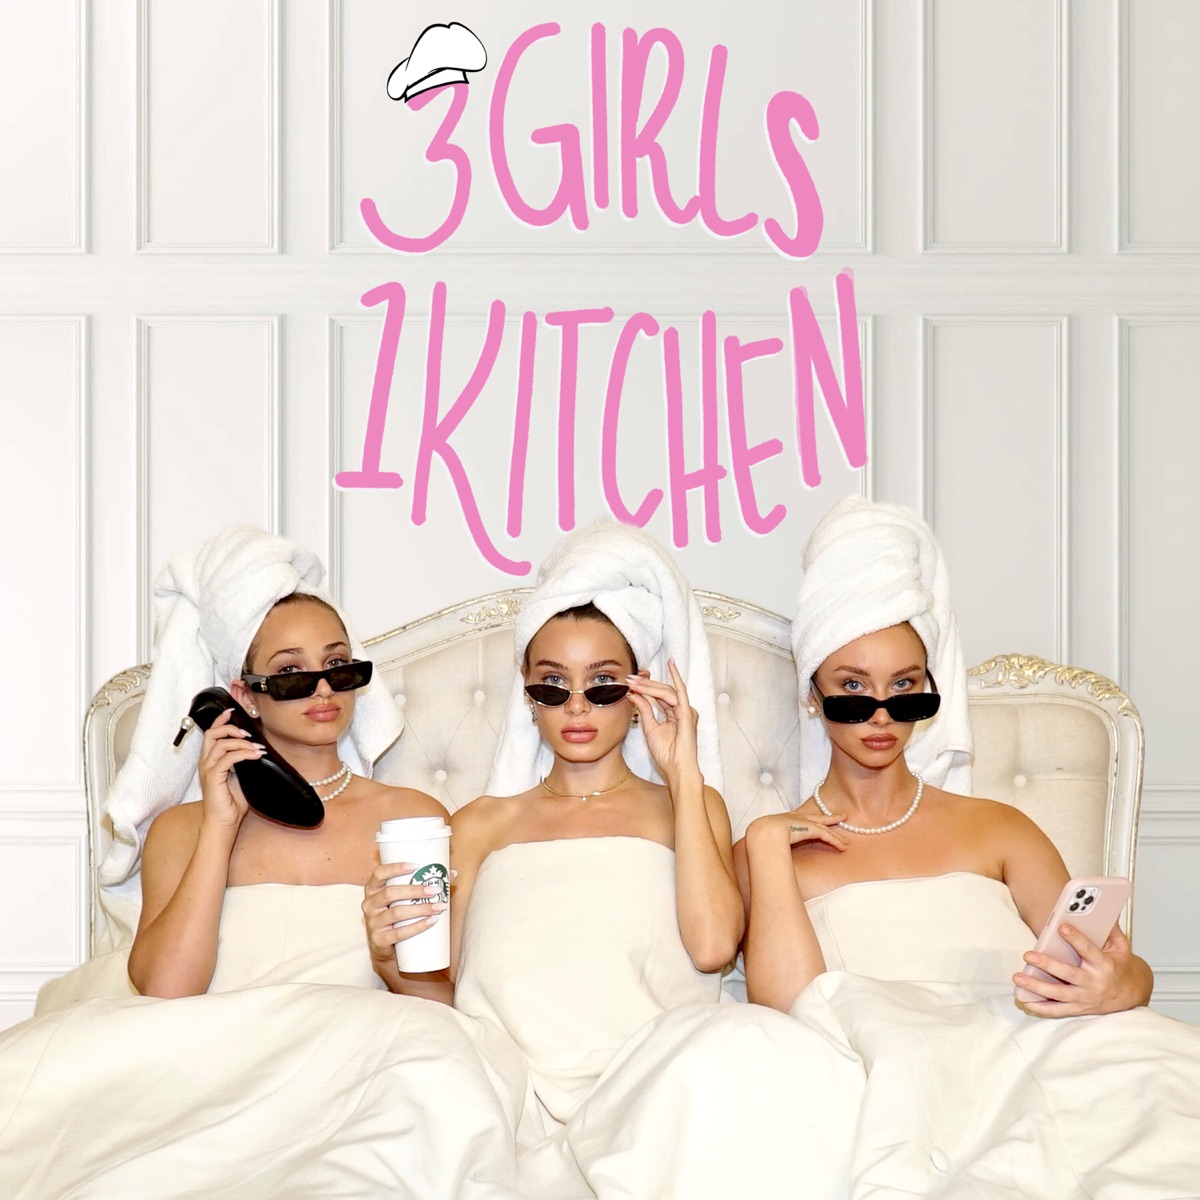 3 girls one kitchen